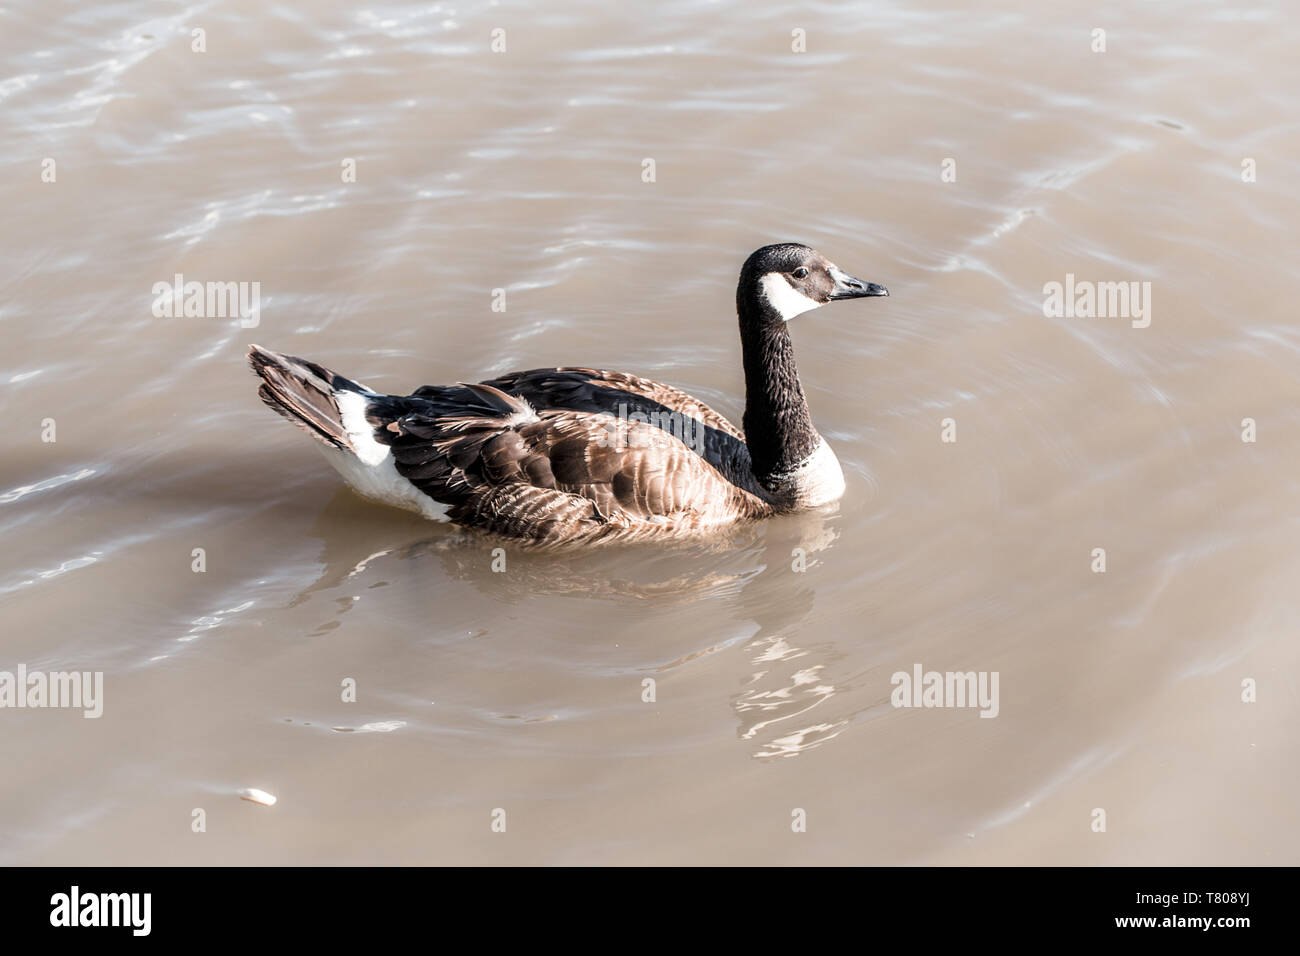 Canada Goose papera galleggiante di nuoto nel lago di stagno a mangiare cibo. La gente di alimentazione animale selvatico uccello con elaborati al forno pane pasto. Foto Stock